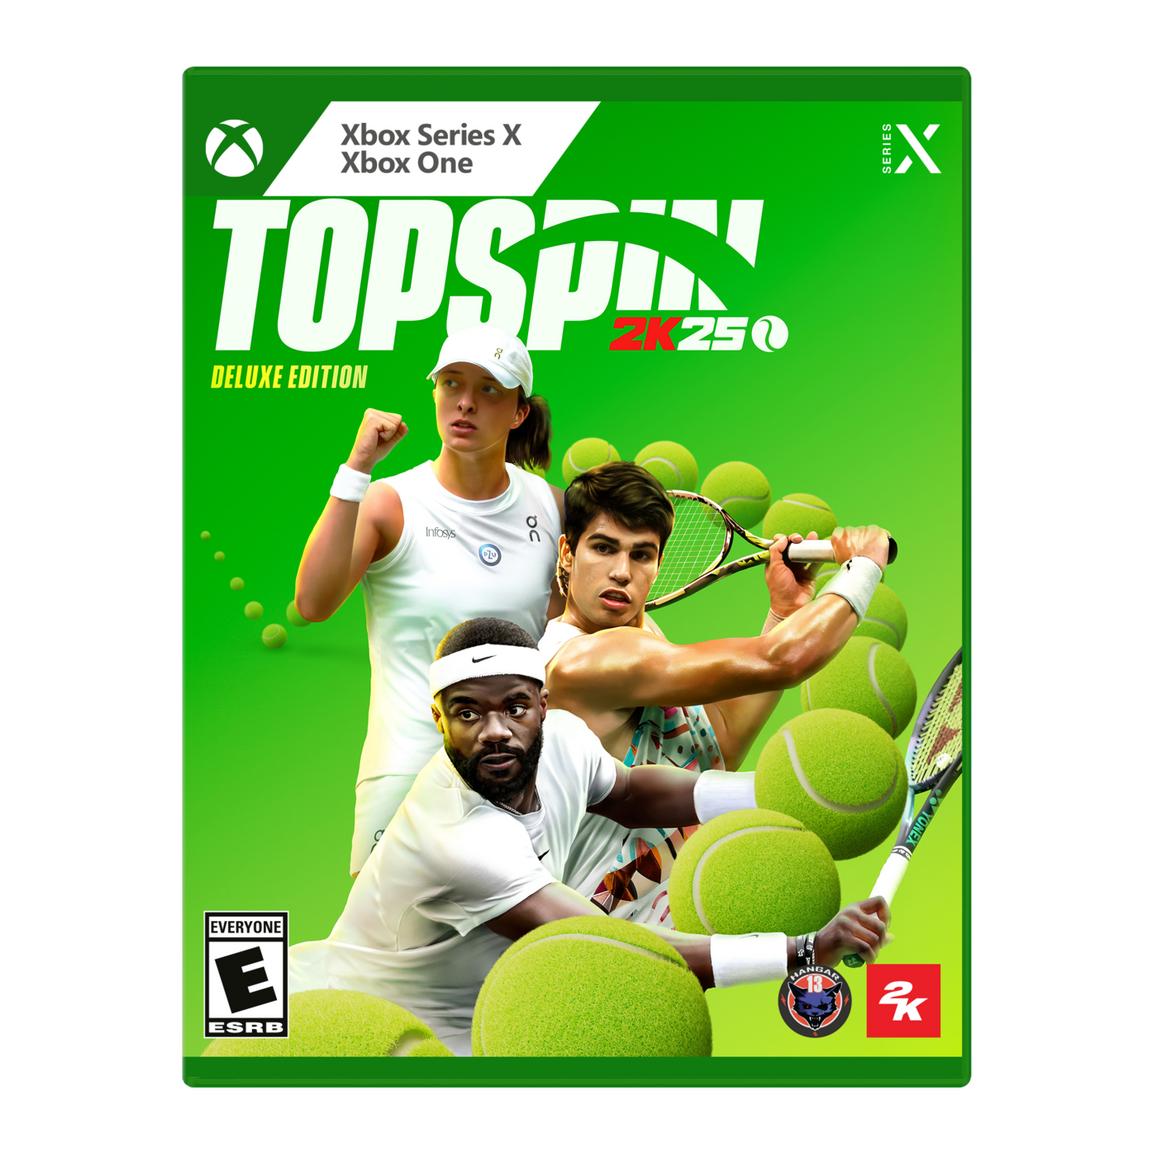 Видеоигра TopSpin 2K25 Deluxe Edition - Xbox Series X, Xbox One штауффер рене роджер федерер биография